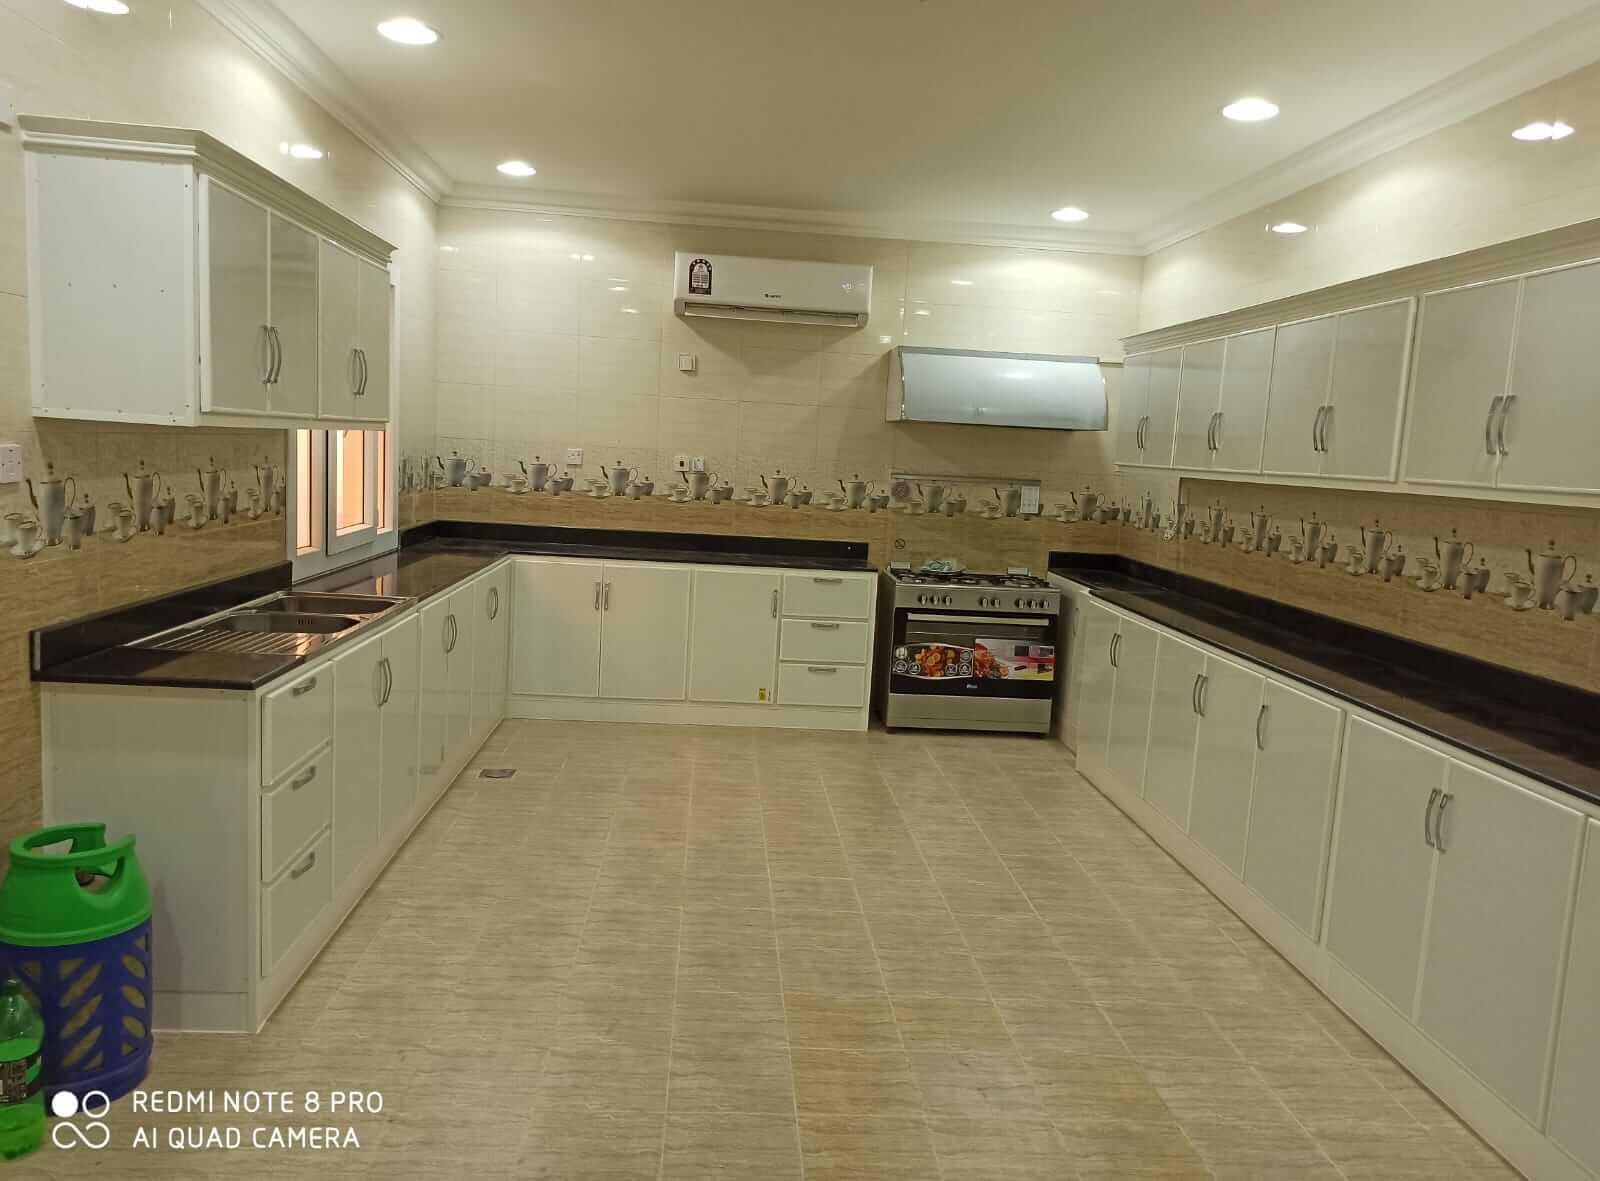 kitchen cabinet installation in doha qatar